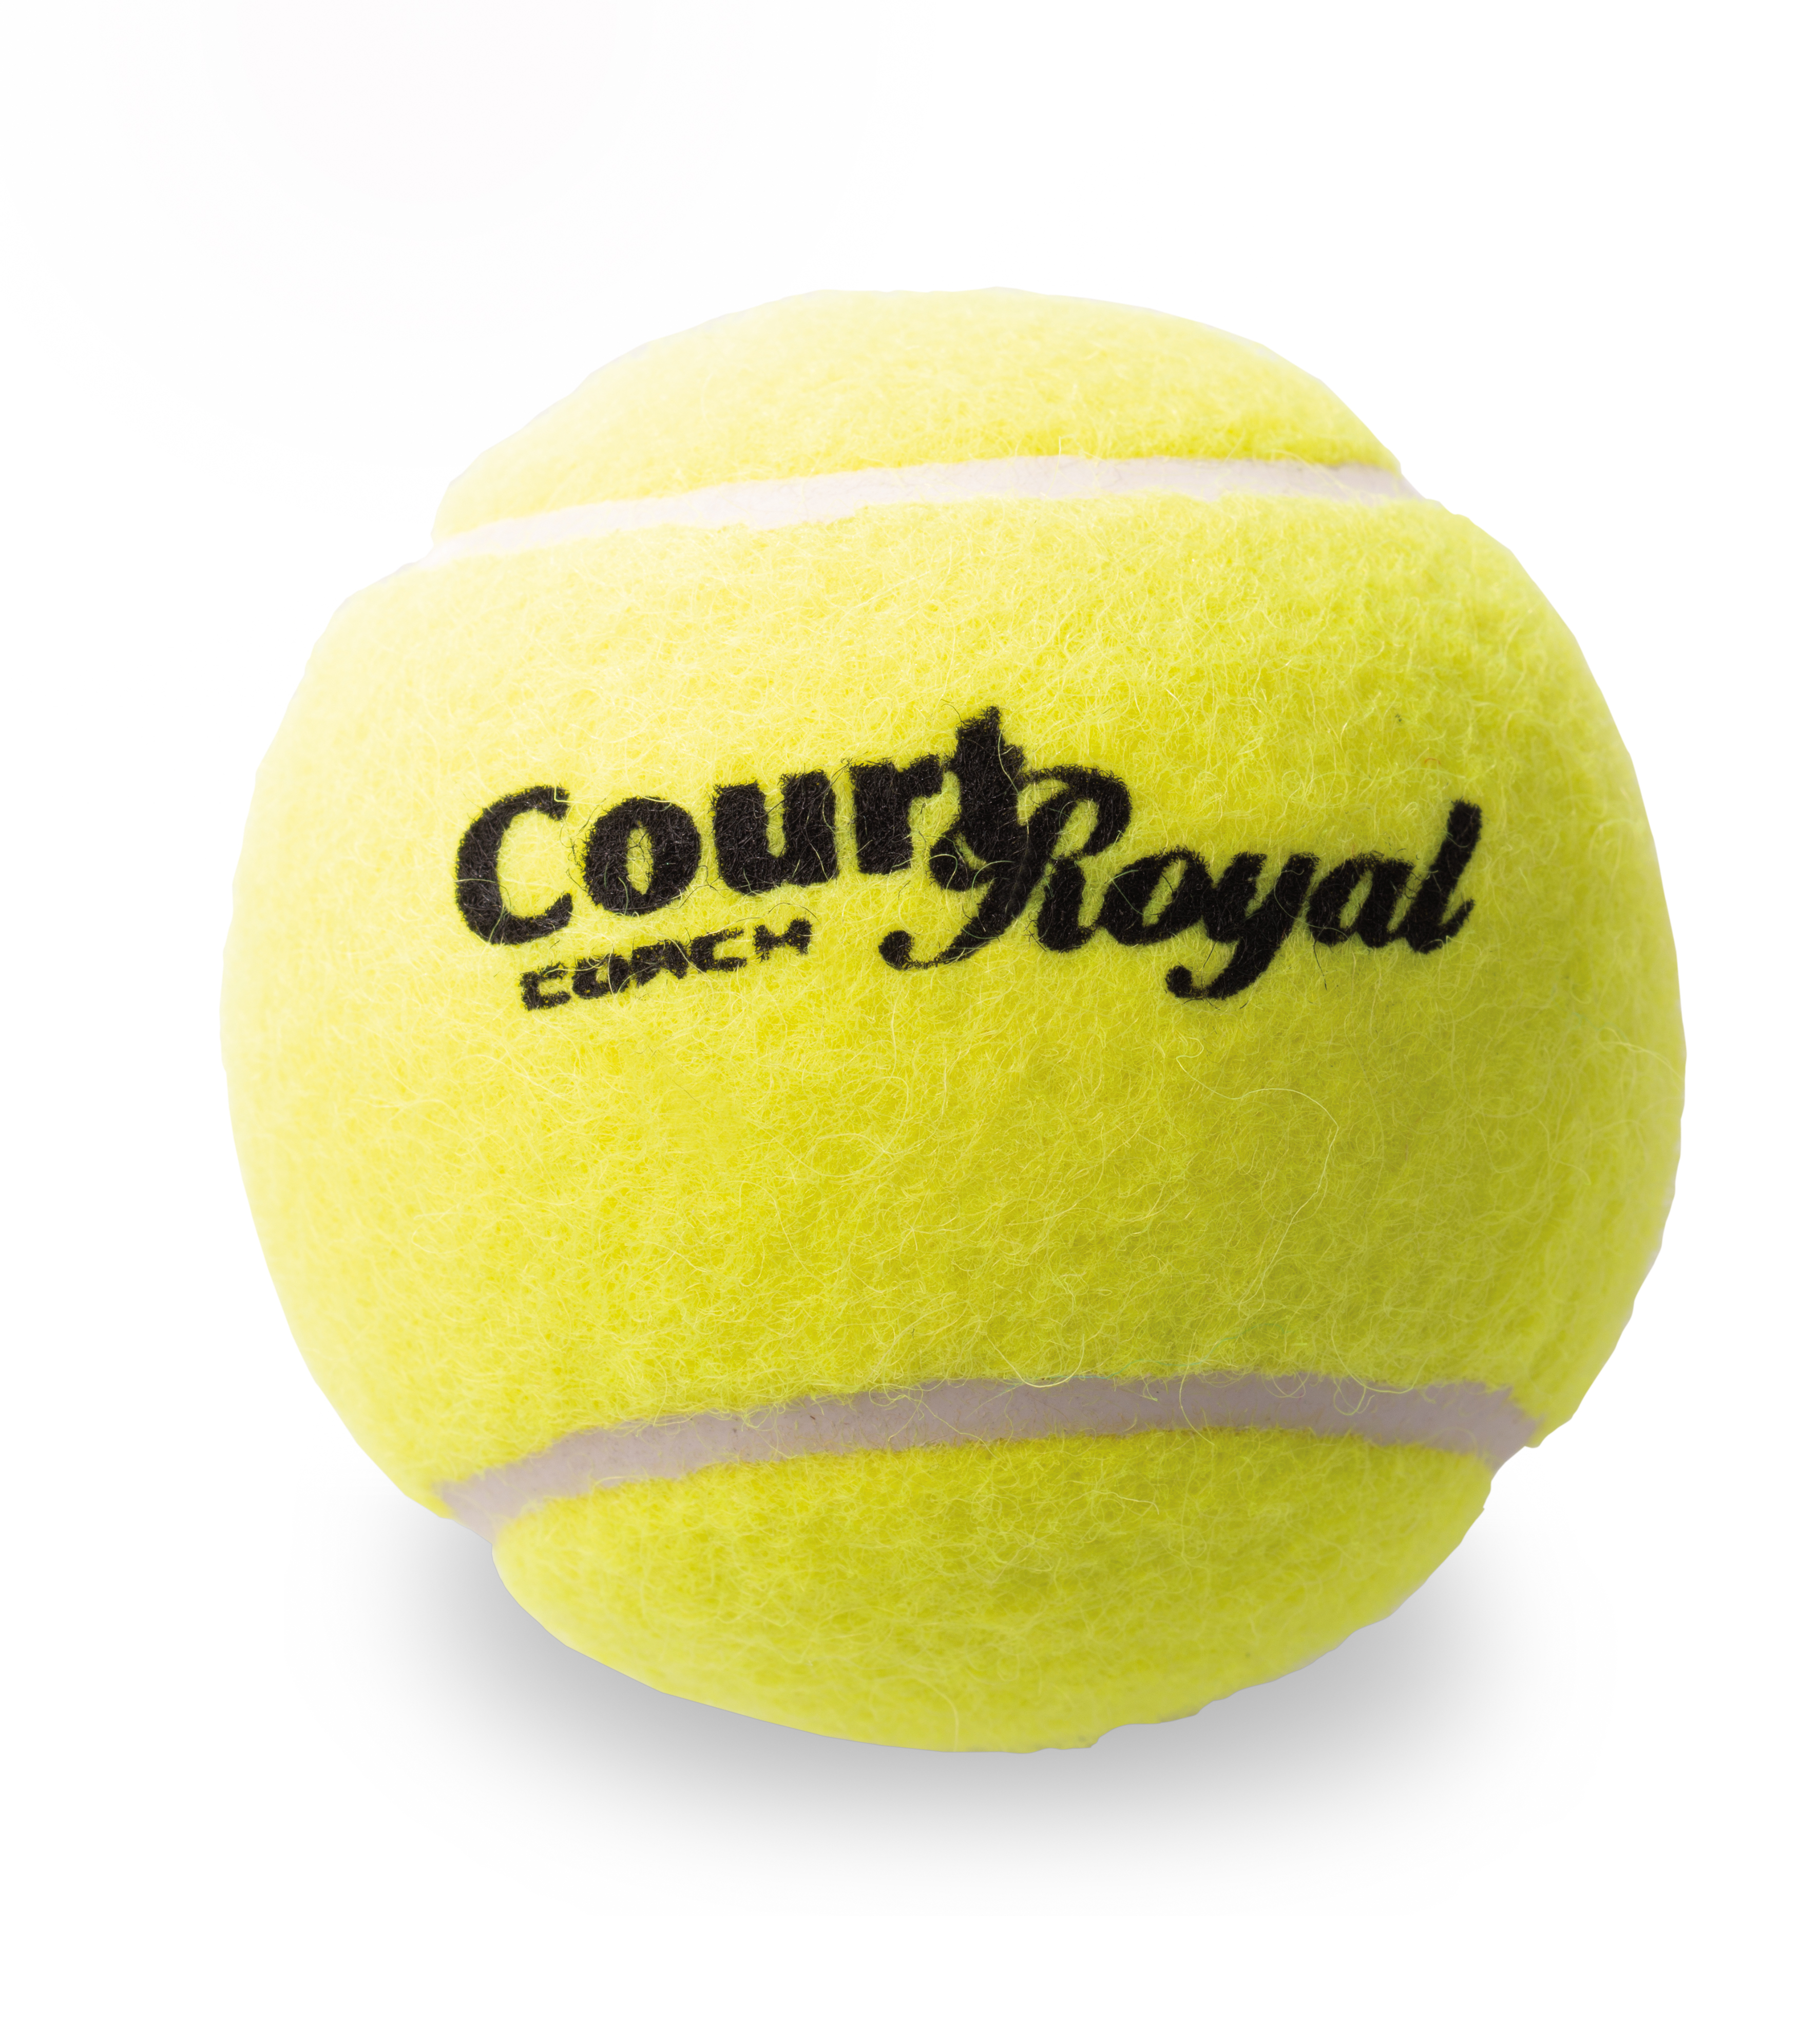 Tennisball Court Royal Coach - pack of 60